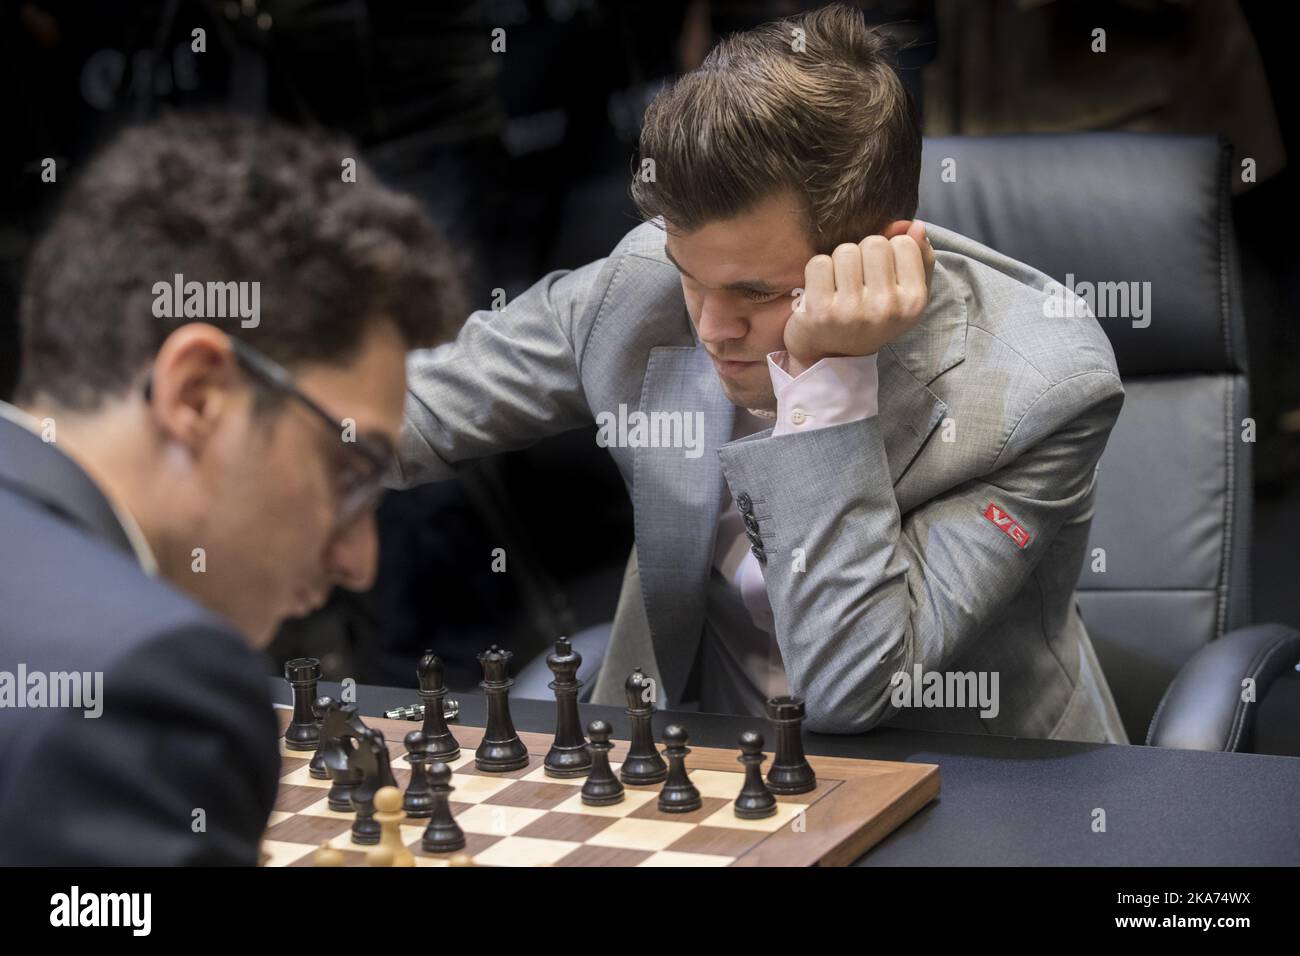 Shakhriyar Mamedyarov E Fabiano Caruana No Torneio De Xadrez Superbet Rapid  & Blitz Foto Editorial - Imagem de bucareste, romênia: 166653751